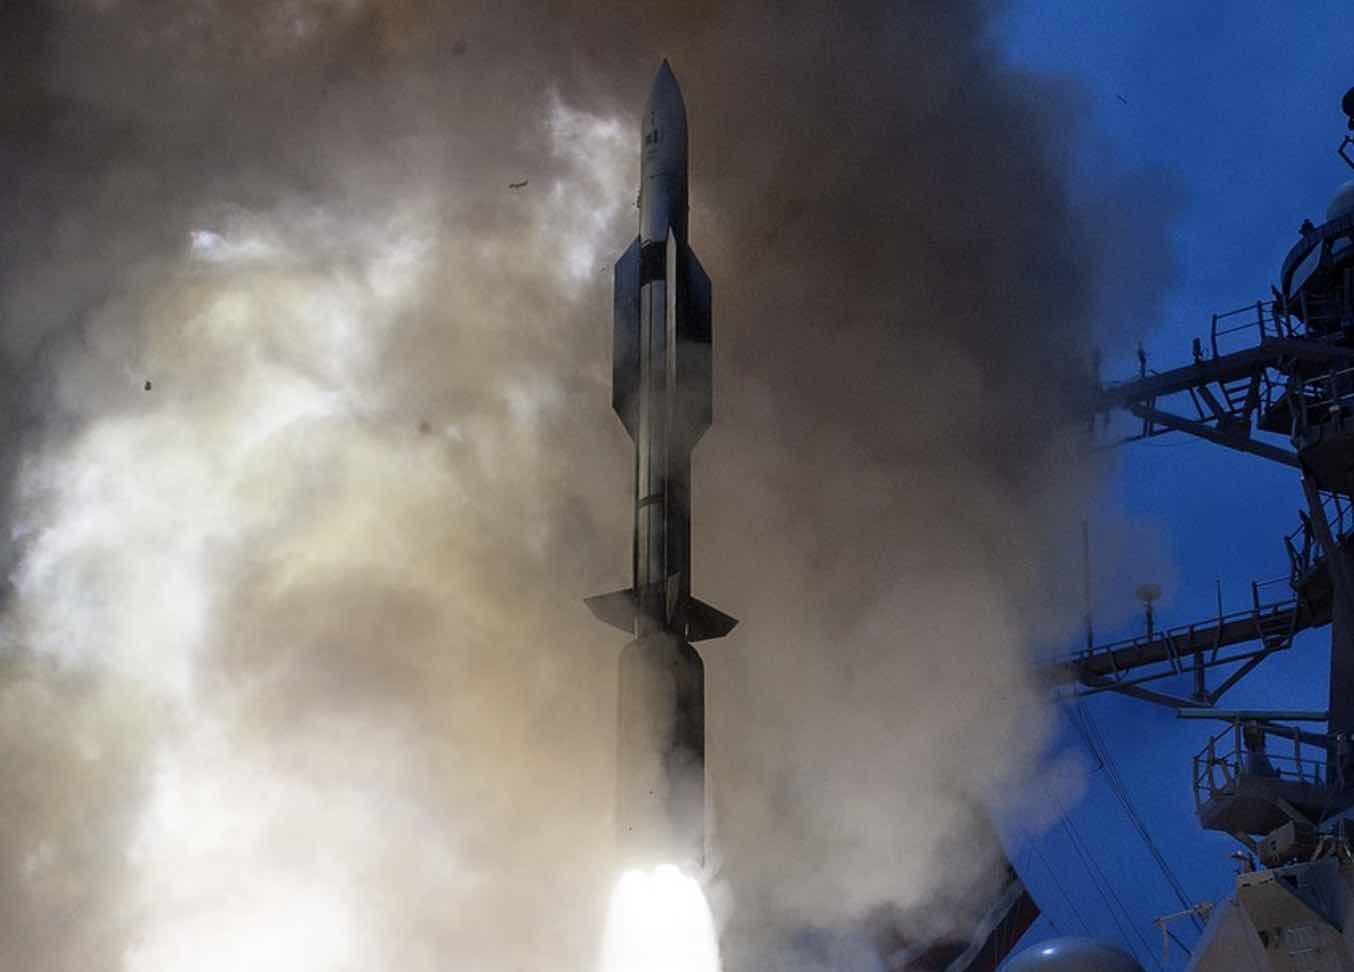 SM-6 missile